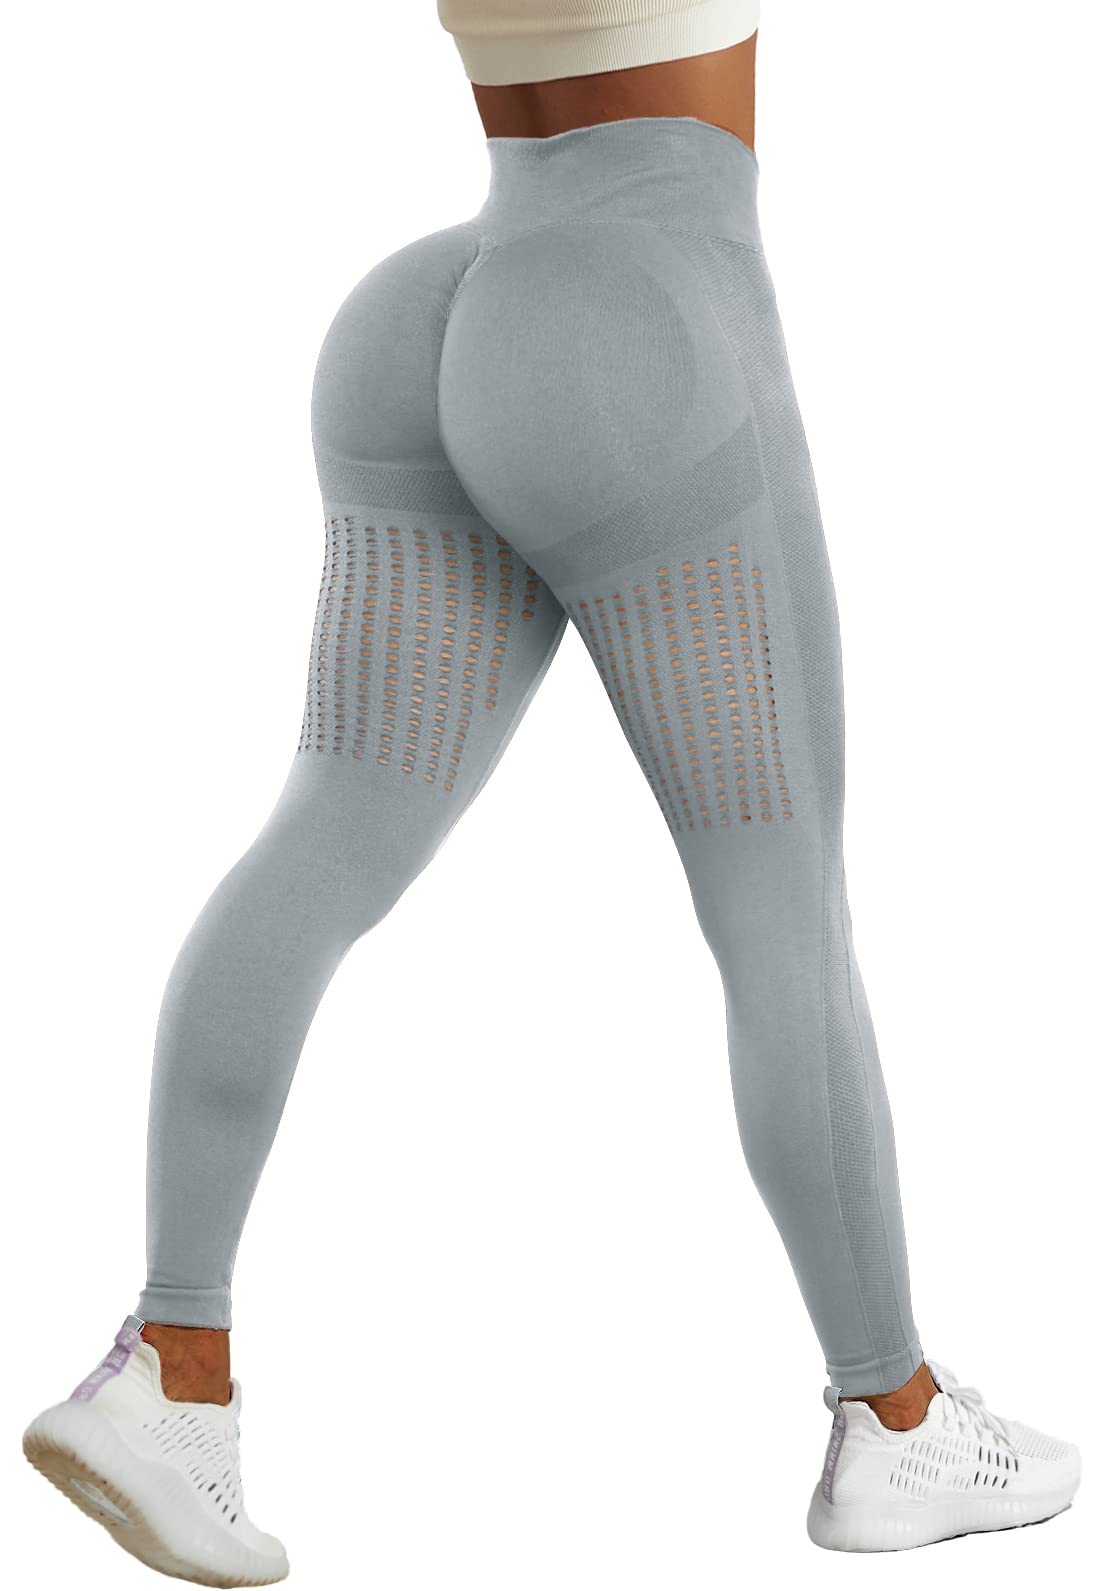 CFR High Waist Butt Scrunch Leggings Workout Seamless Leggings for